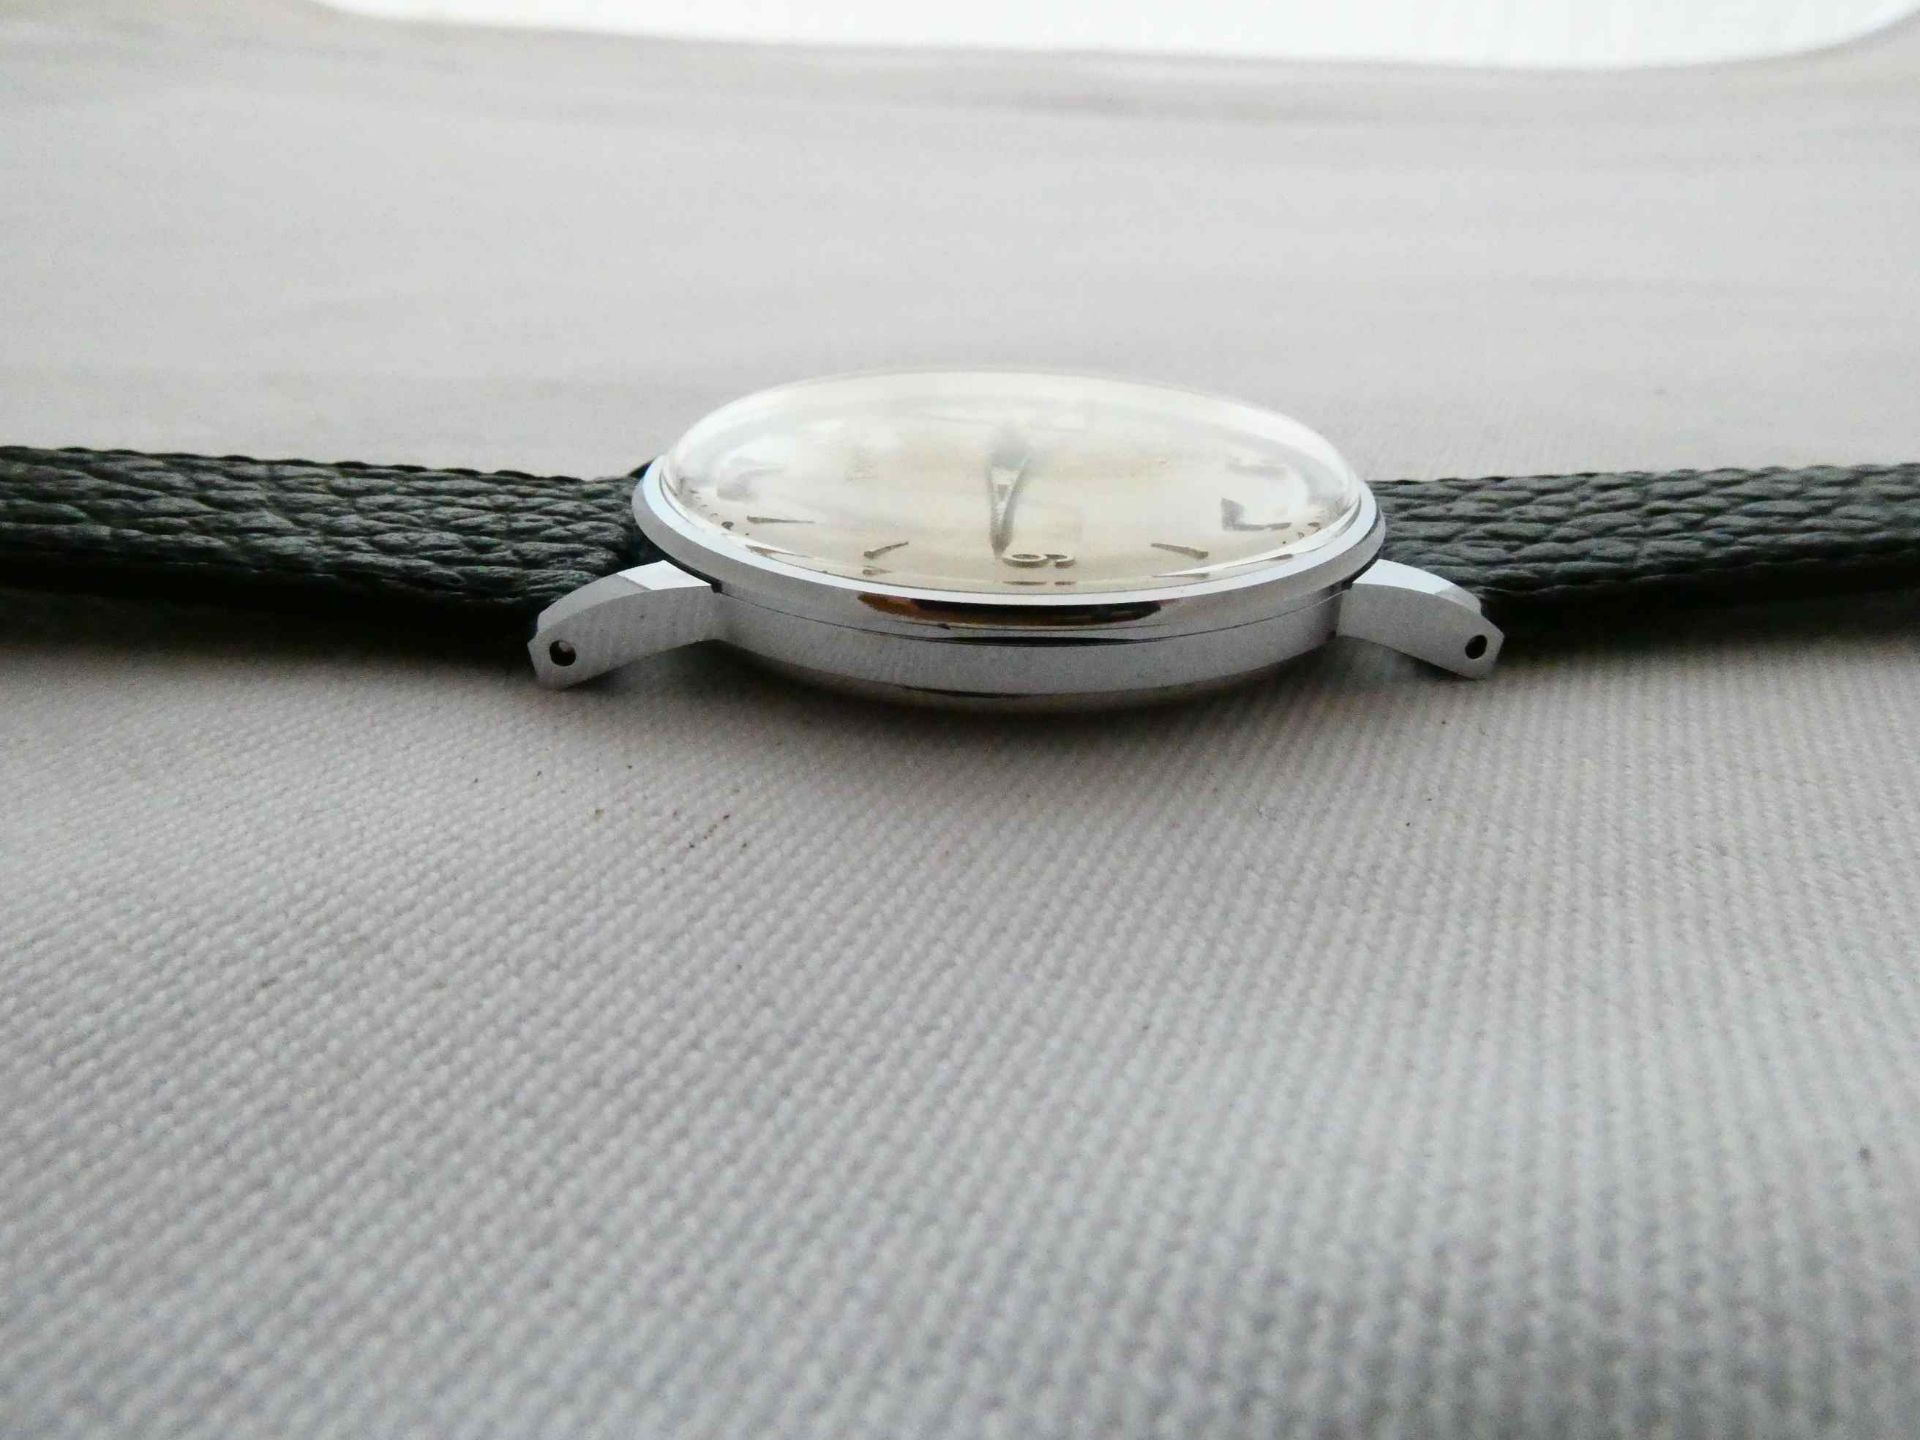 Doxa Armbanduhr - Bild 3 aus 5